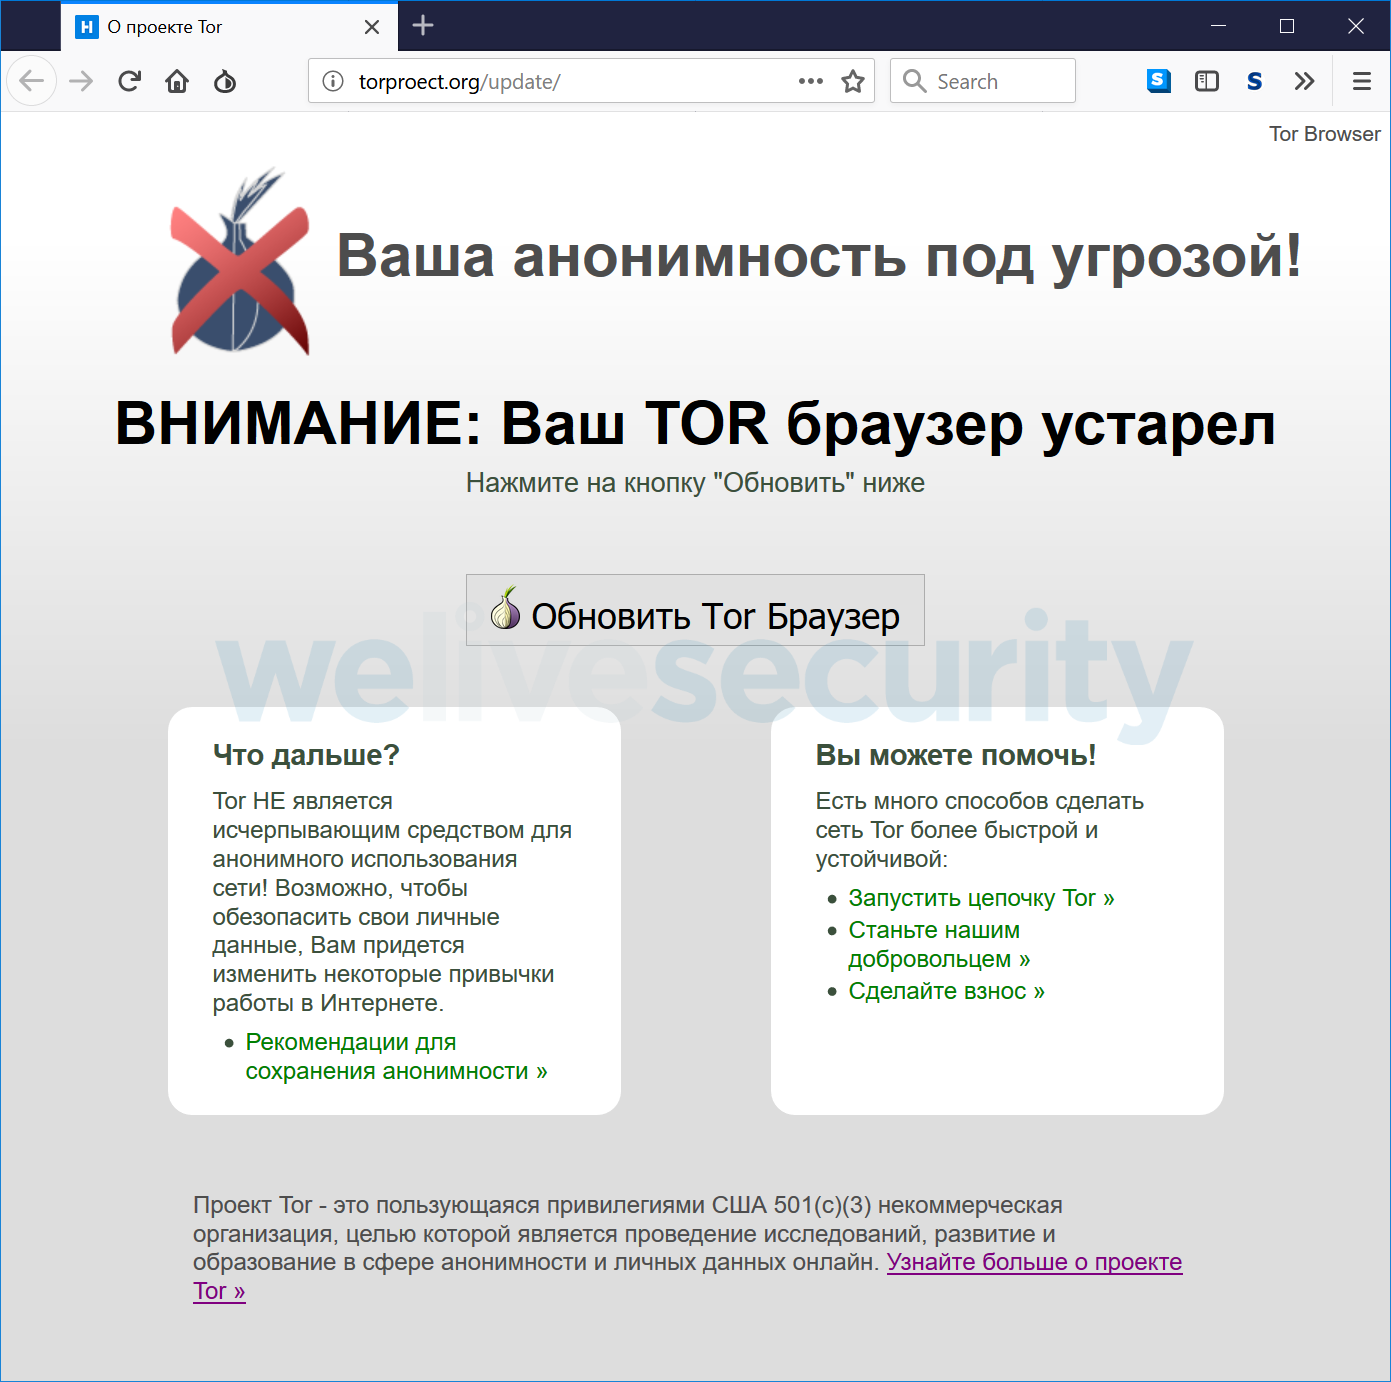 Tor browser скачать бесплатно русская версия linux mega tor browser на русском языке для windows 10 скачать mega2web